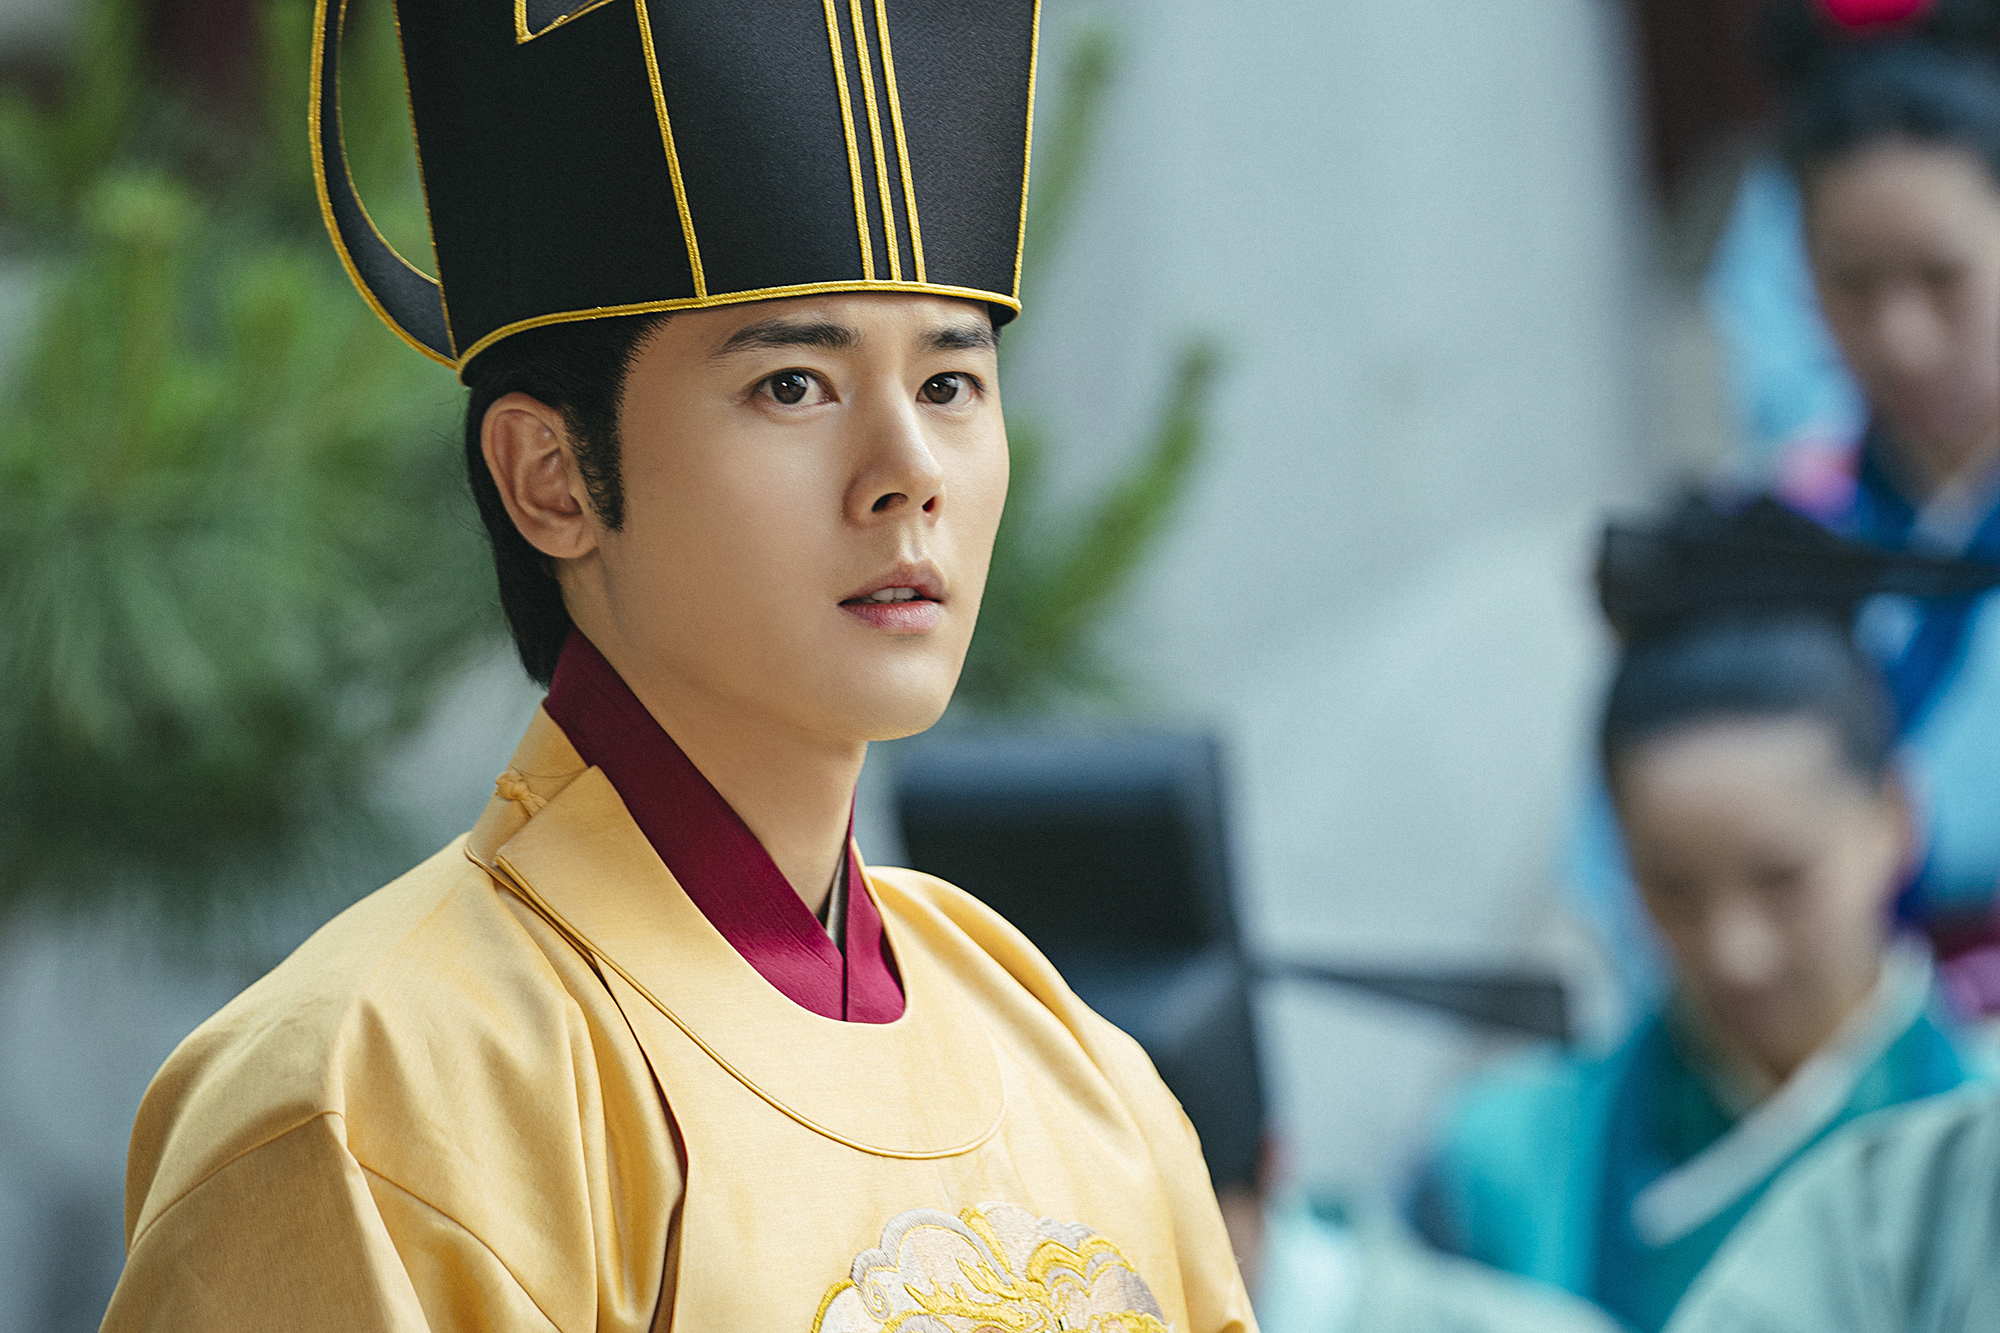 Kim Dong Jun gây tranh cãi về diễn xuất khi đóng chính phim “Chiến tranh Goryeo-Khitan”. Ảnh: Nhà sản xuất 